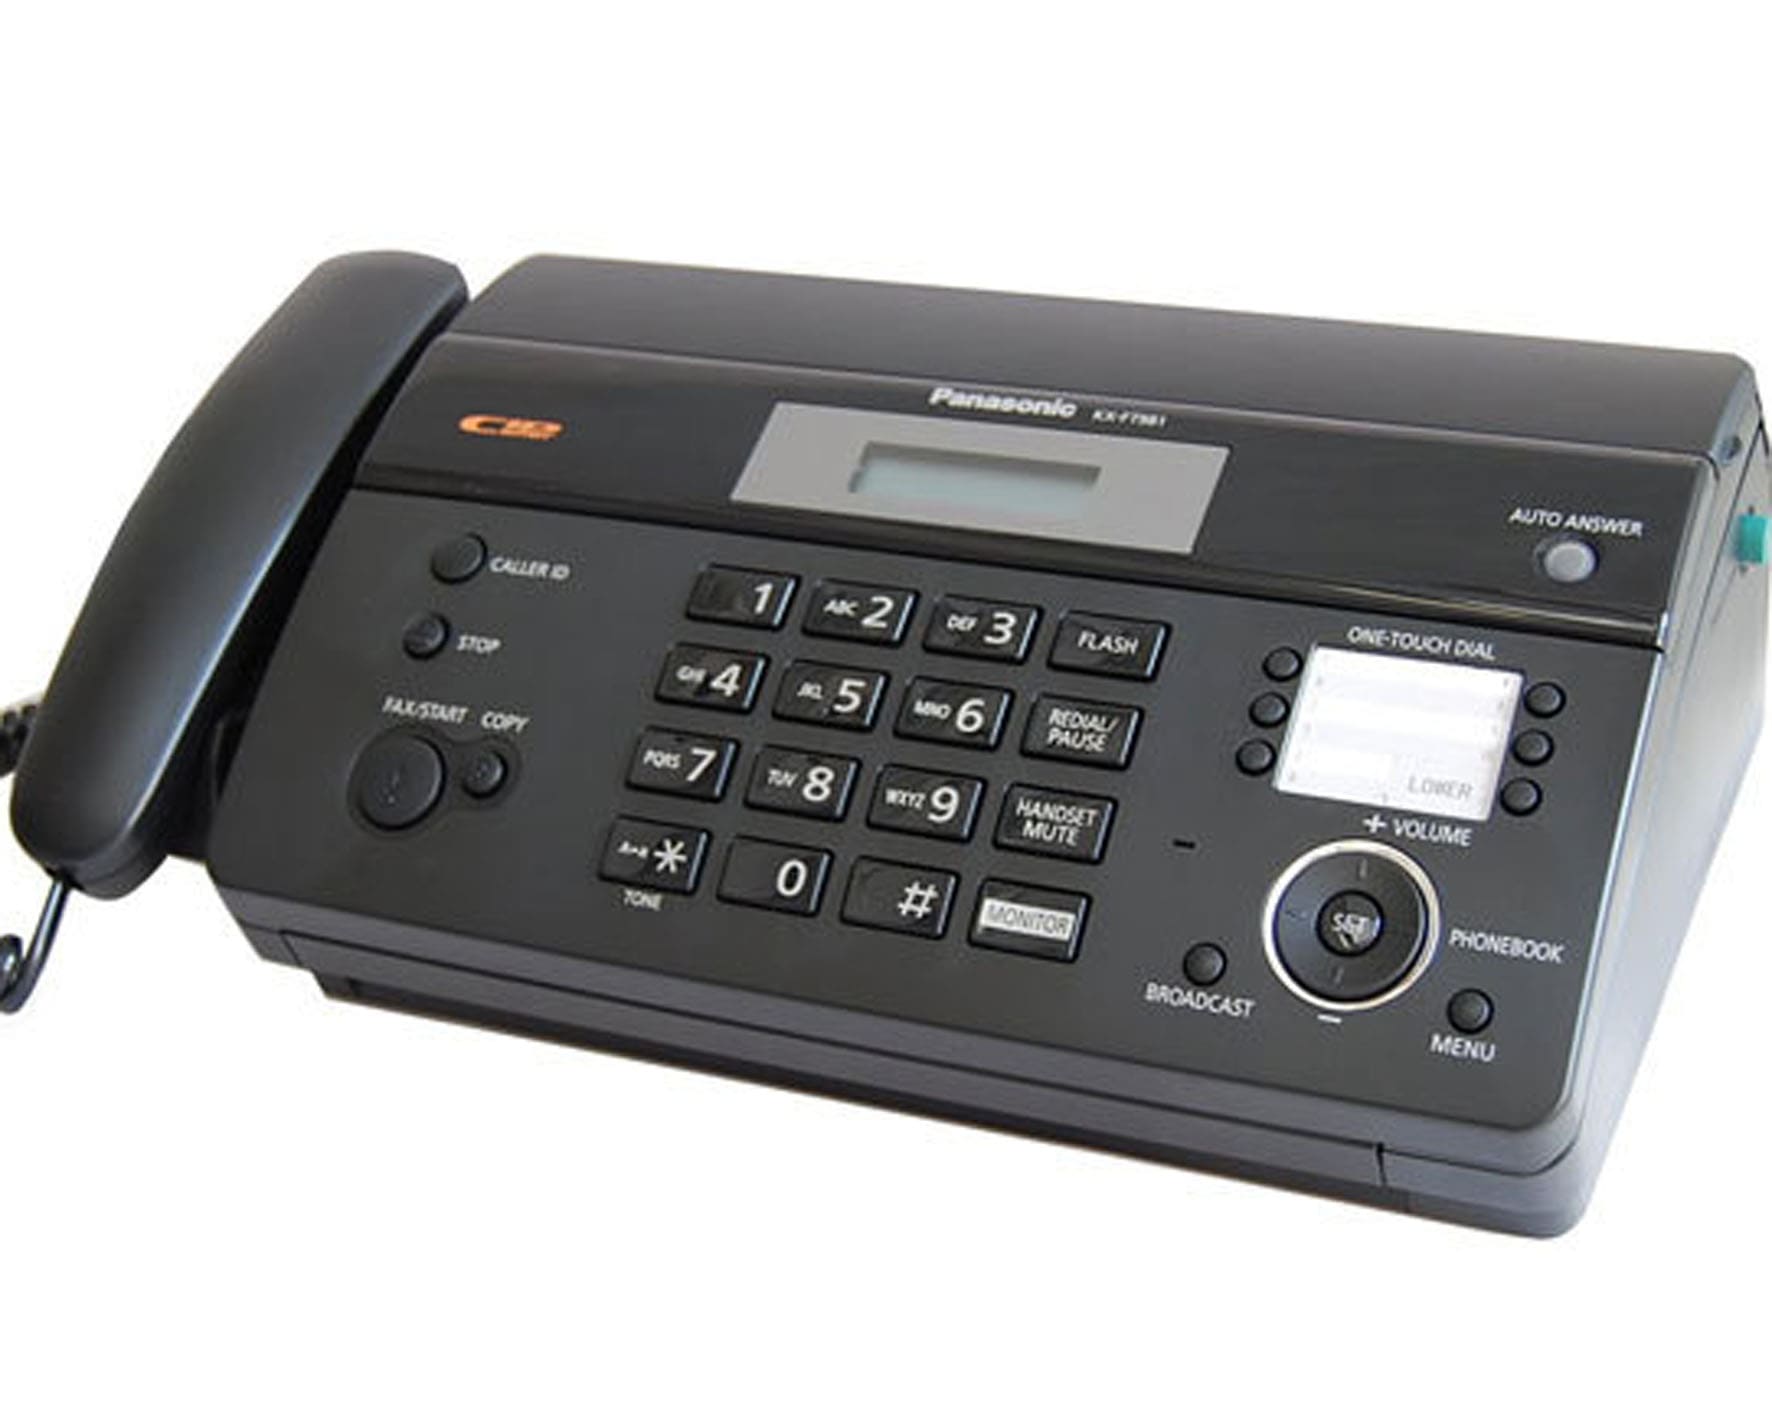 Máy fax nhiệt Panasonic KX FT983 - Nhỏ gọn, tiện ích, giá rẻ hấp dẫn